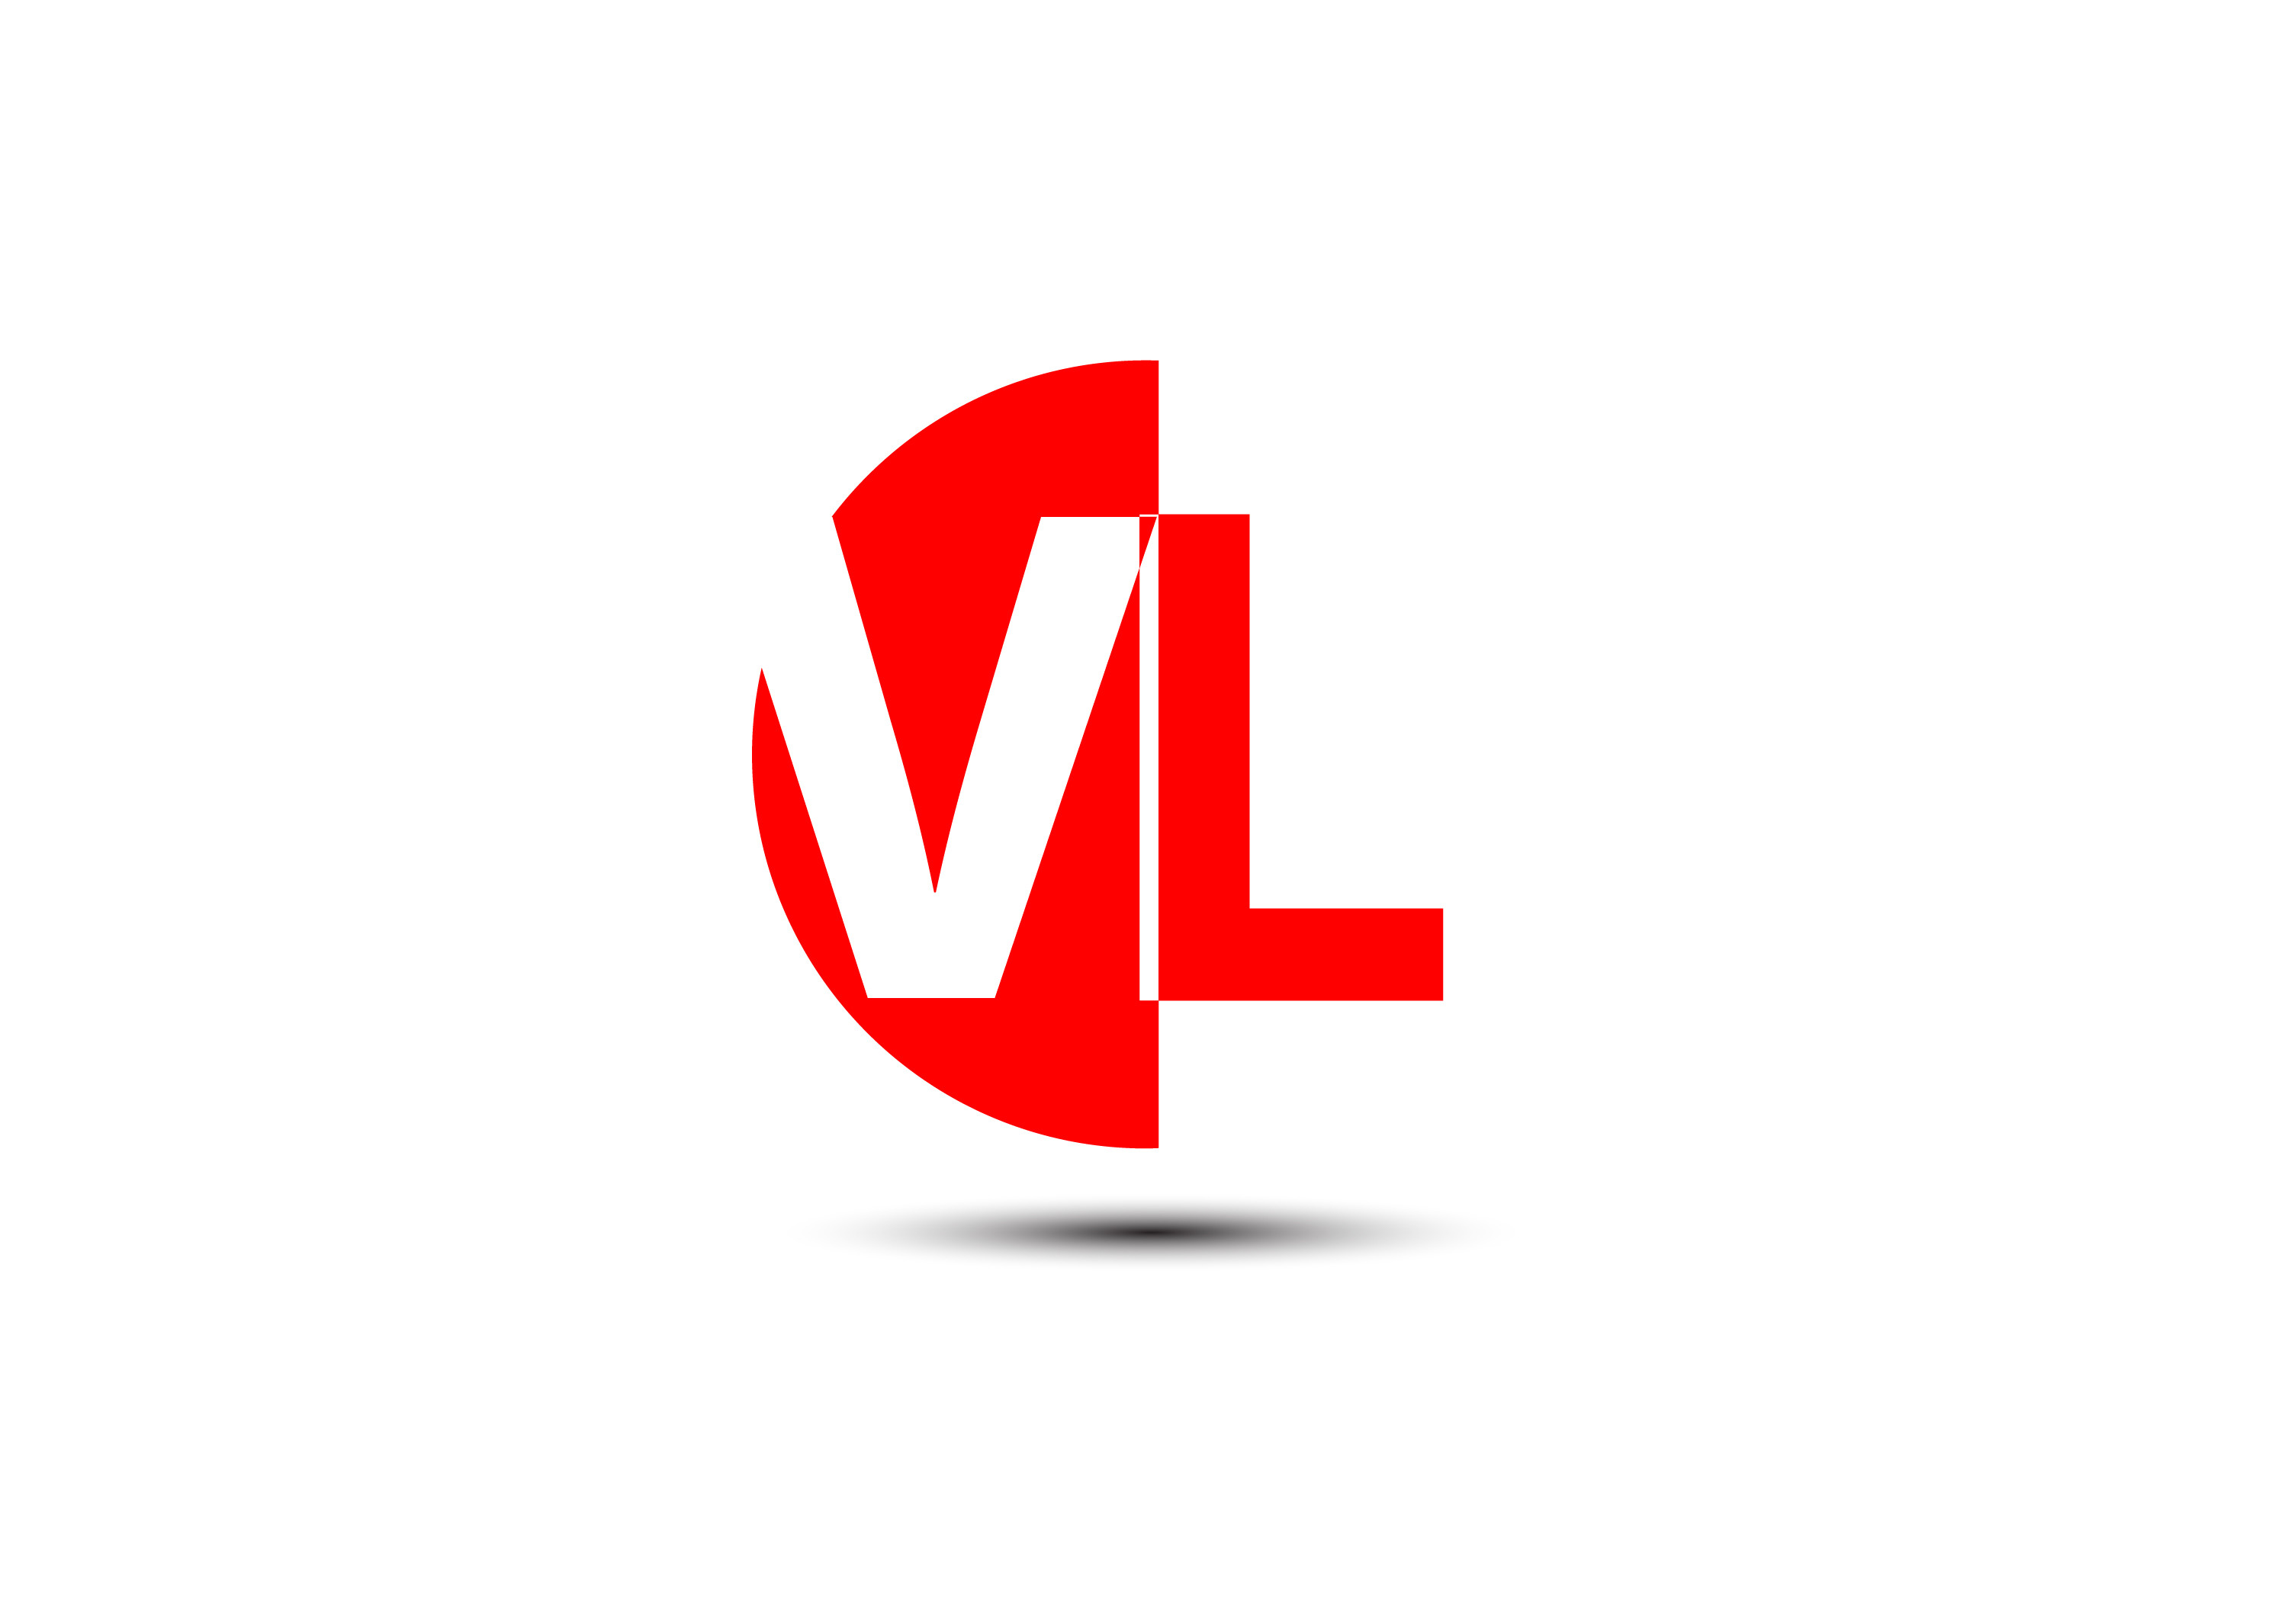 VL Letter Logo Design. VL Letter Logo Vector Illustration - Vector